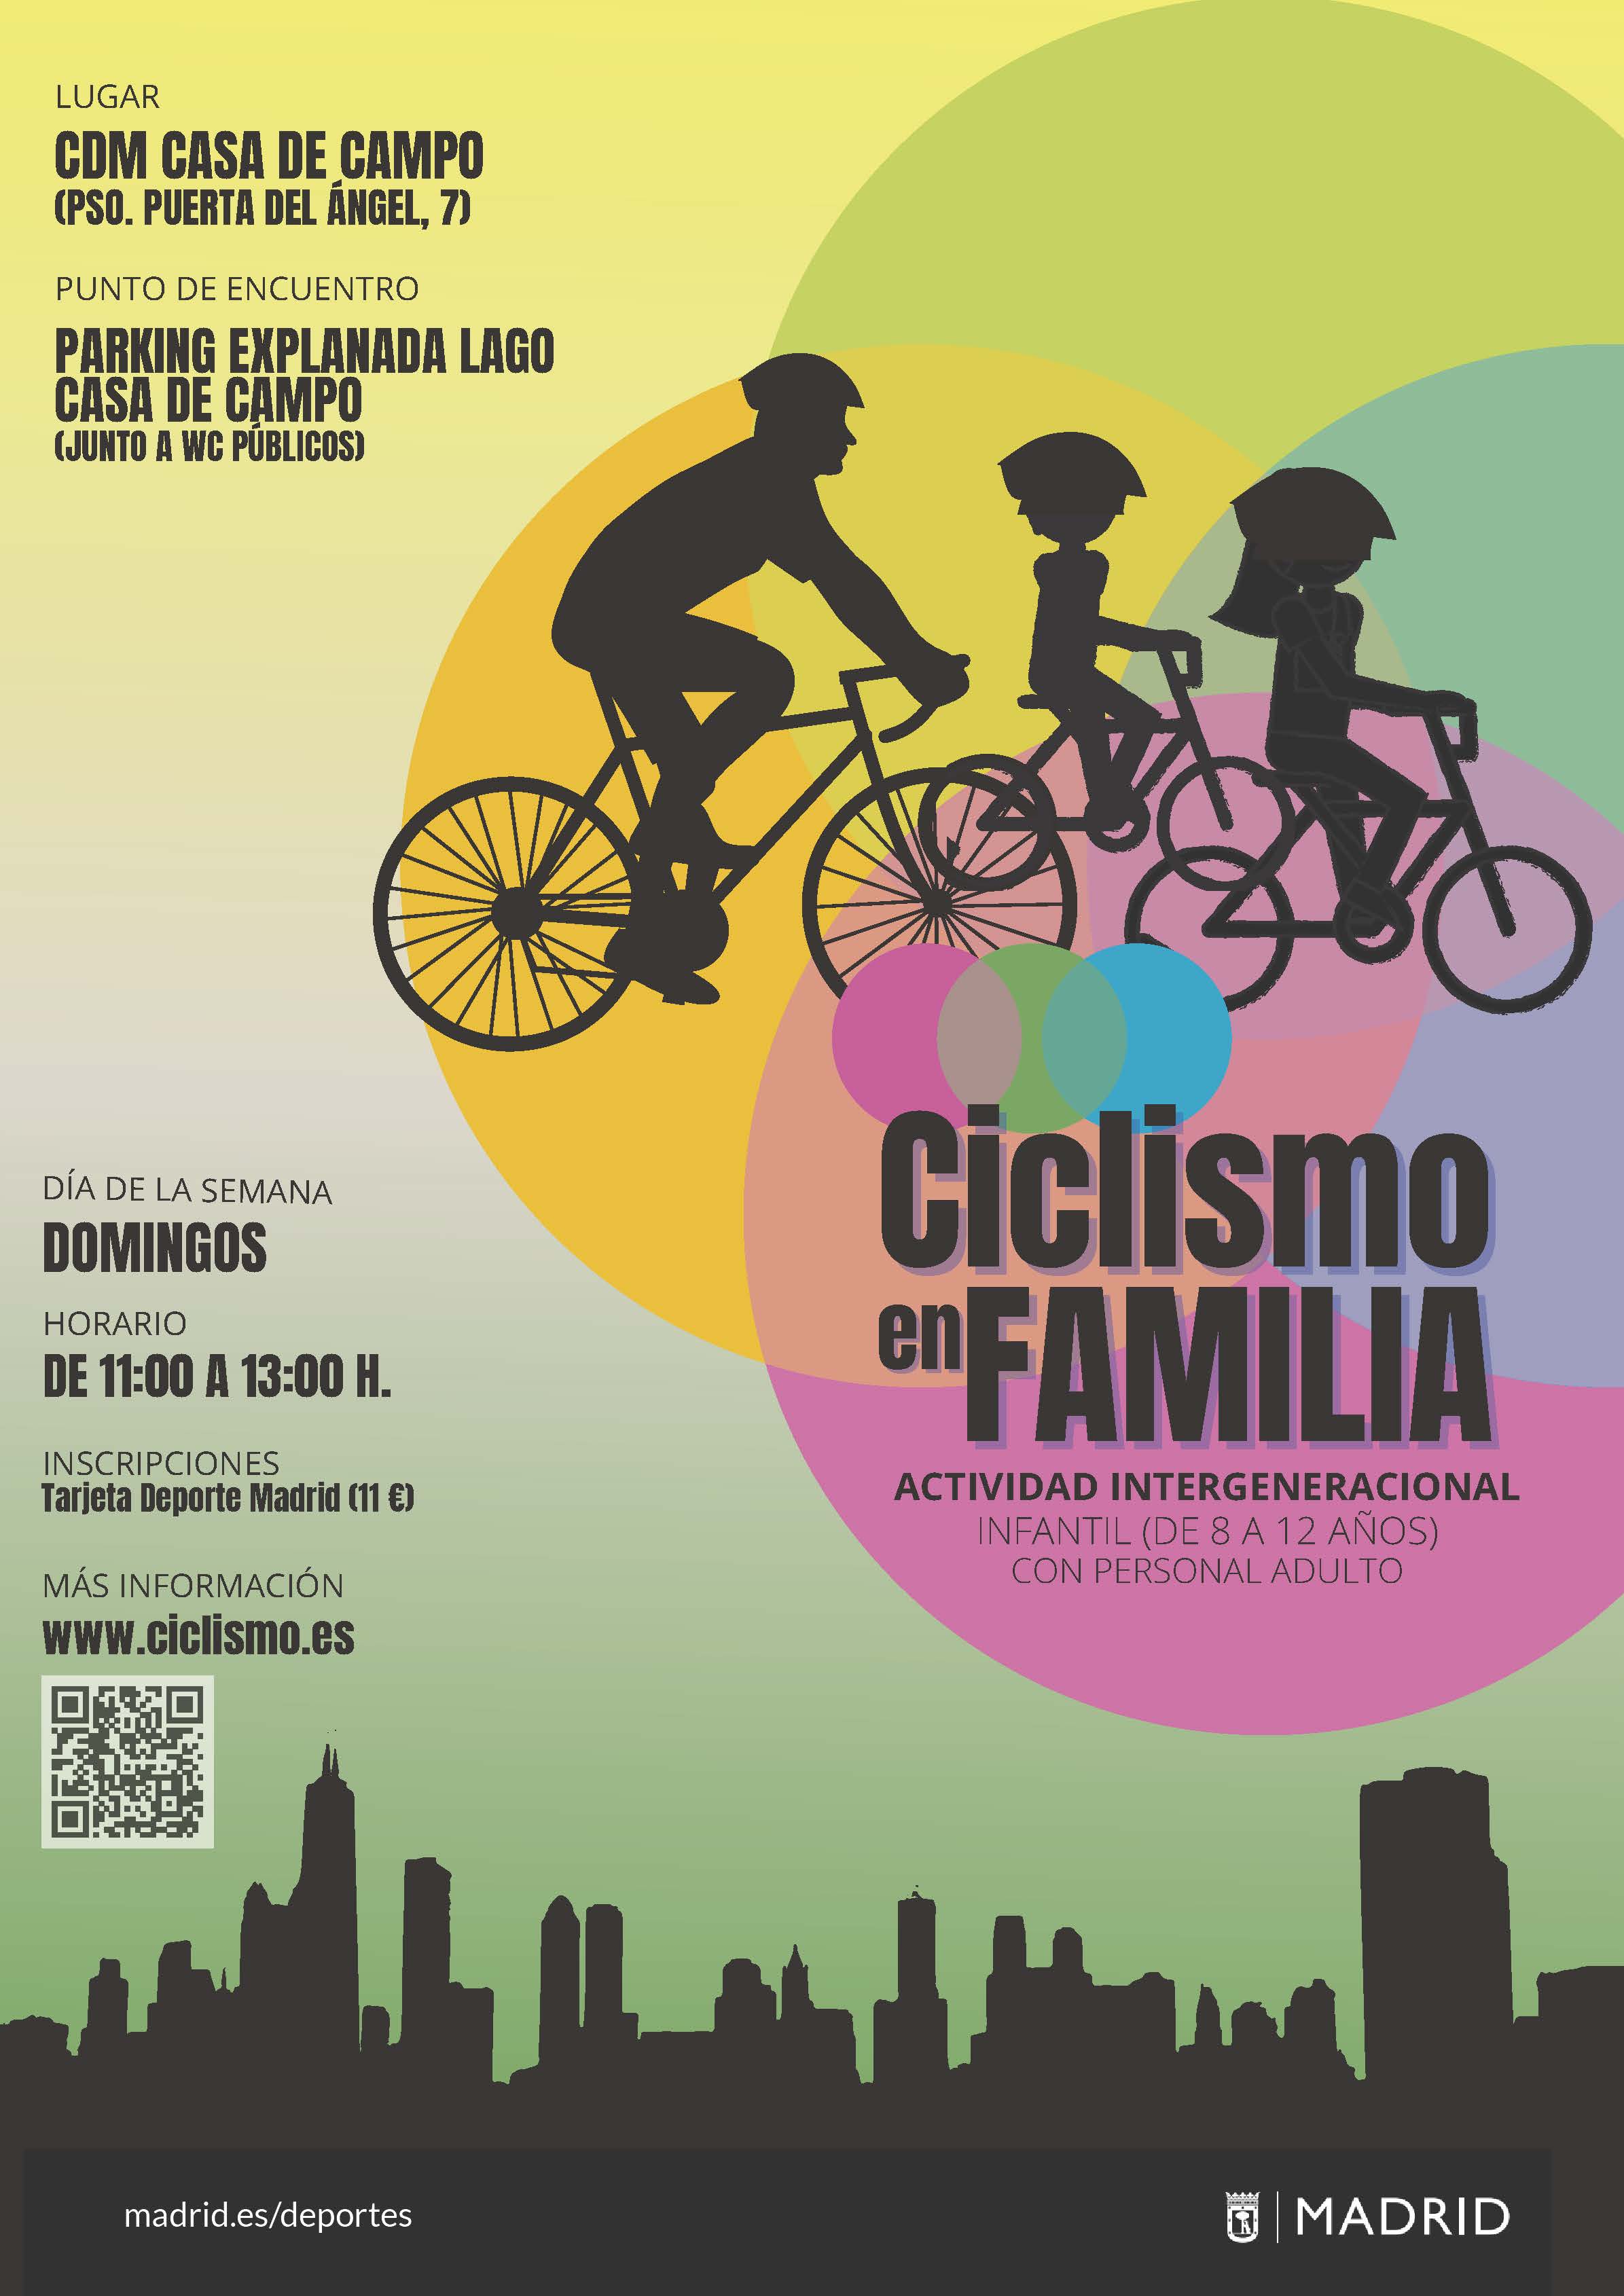 Inscríbete a la actividad “Ciclismo en Familia” del programa Ciclismo por Madrid